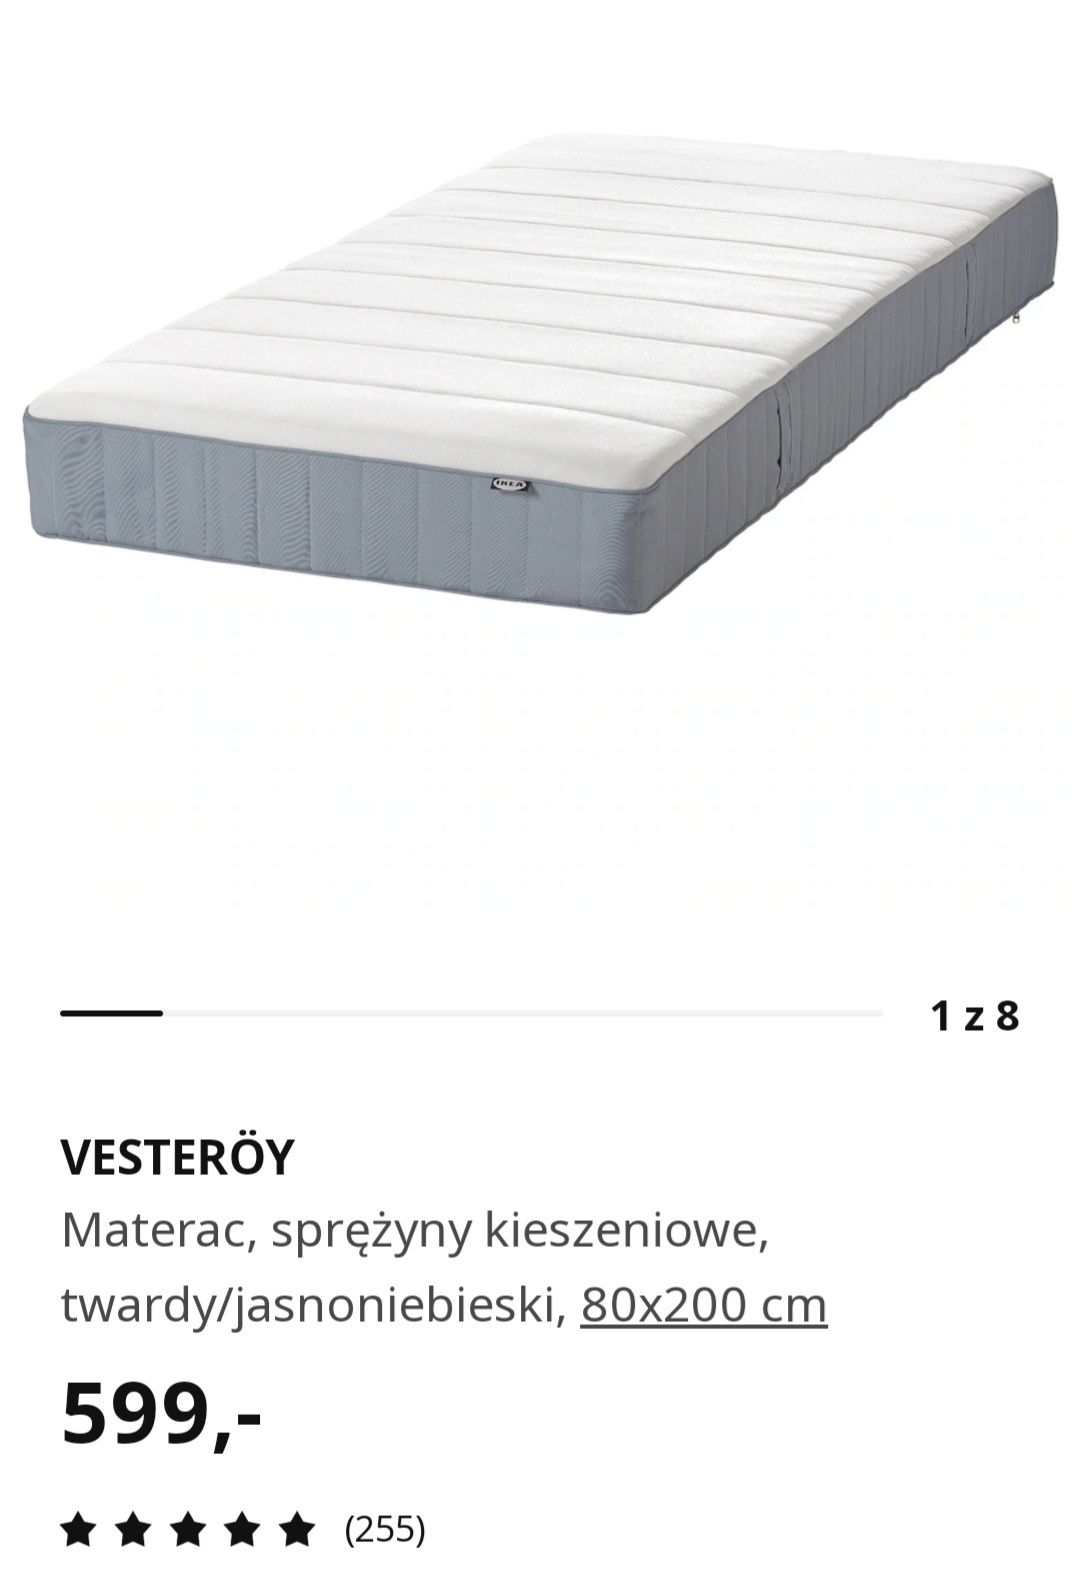 Nowy Materac sprężynowy VESTEROY z IKEA 1/2 ceny, 80 cm